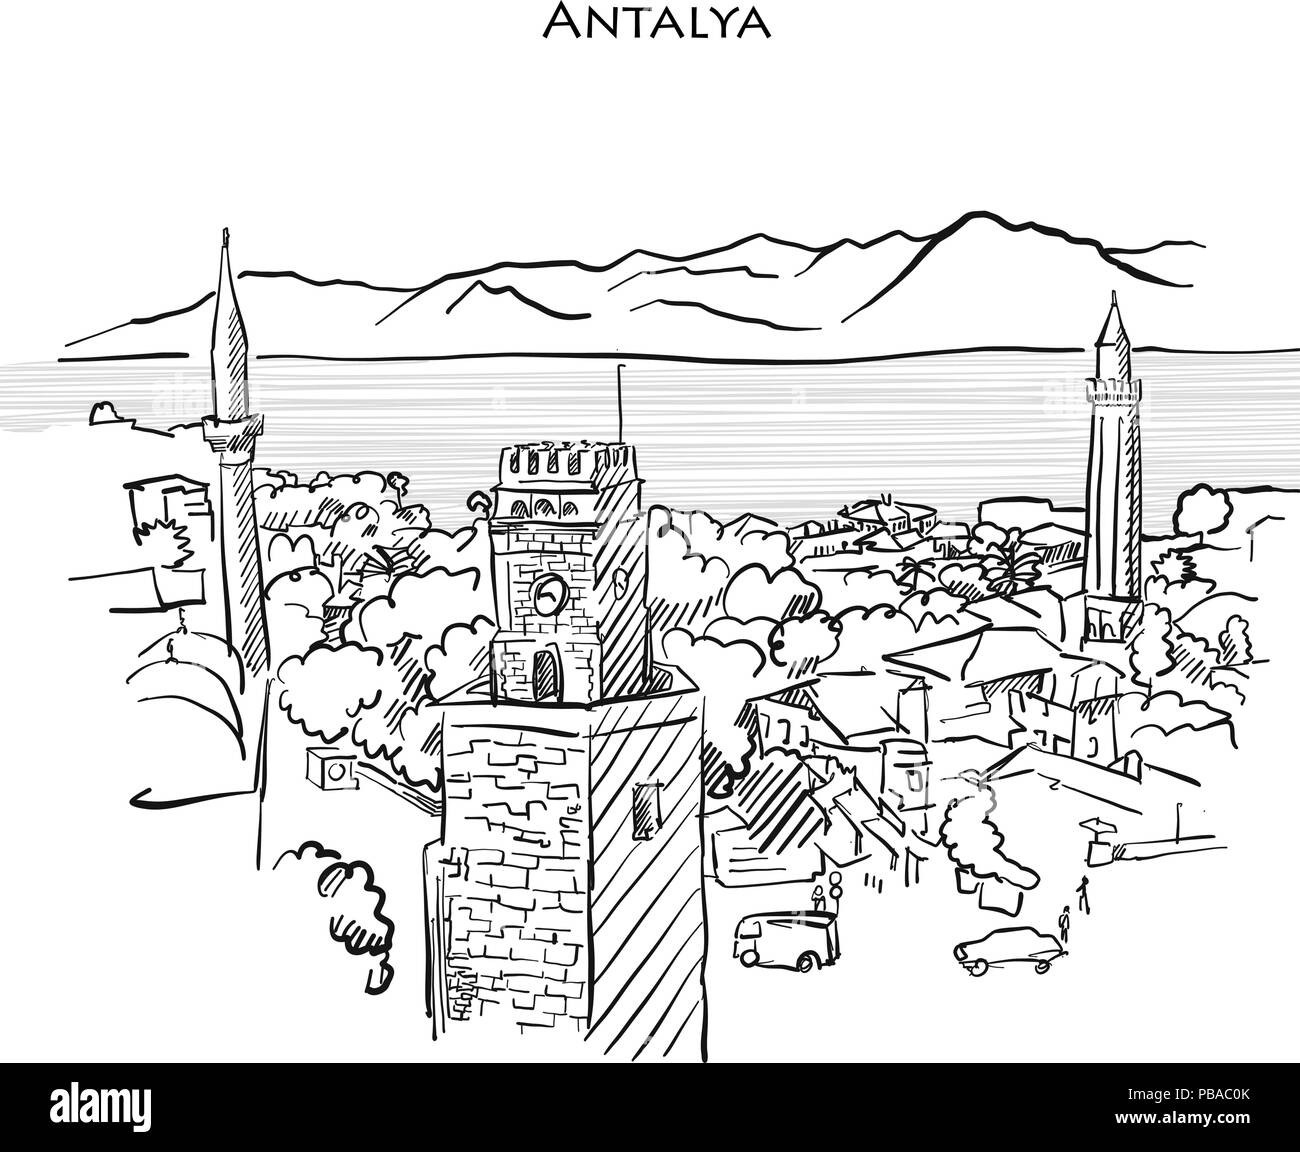 Antalya Travel Sketch. Disegnate a mano illustrazione vettoriale di Antalya, old town. Illustrazione Vettoriale